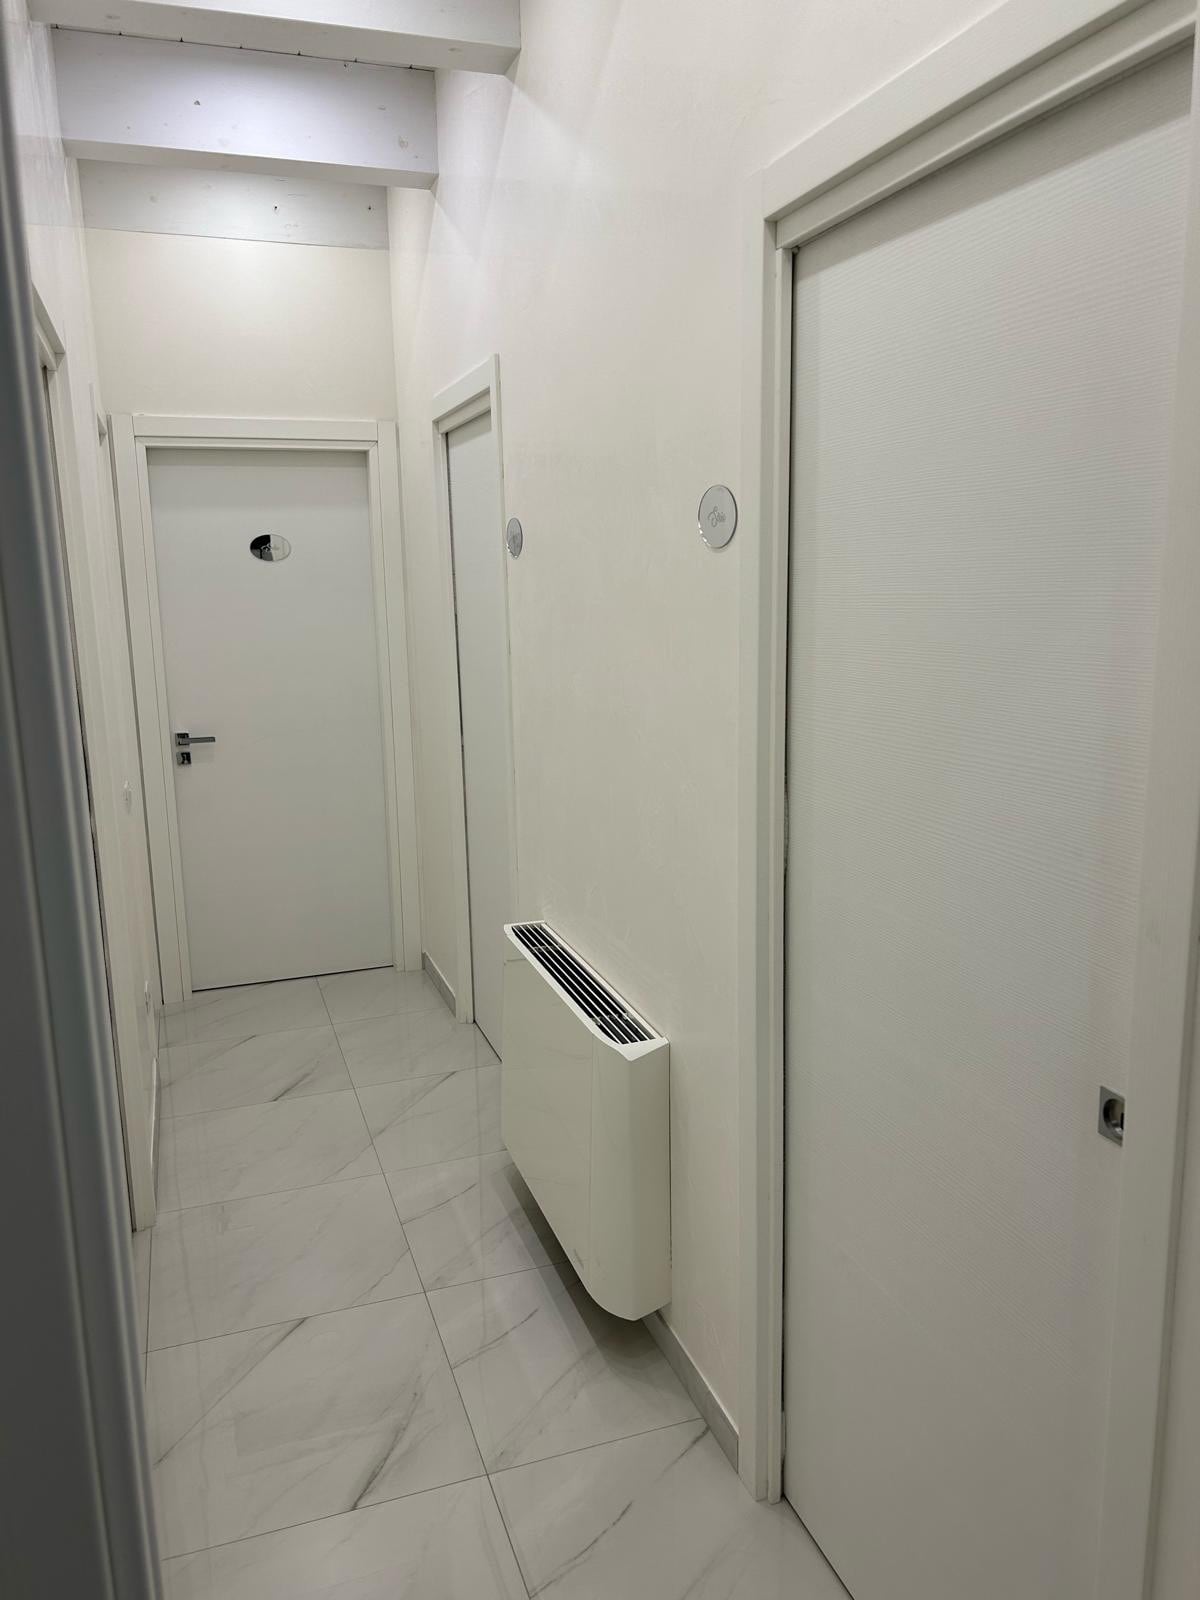 Camera singola Vega con bagno condiviso.